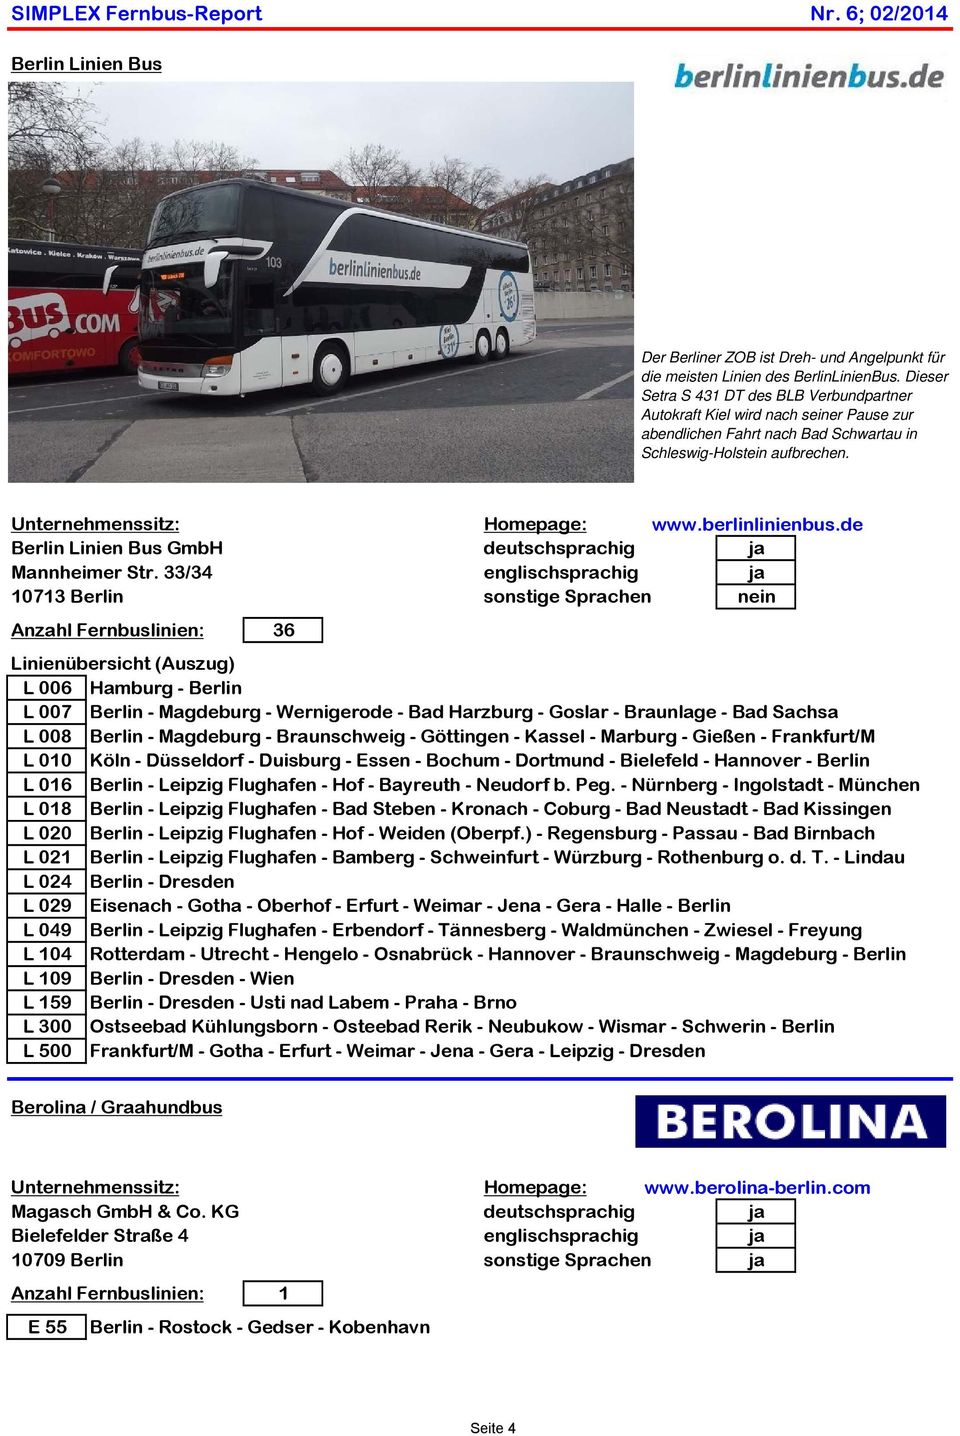 berlinlinienbus.de Berlin Linien Bus GmbH deutschsprachig ja Mannheimer Str.